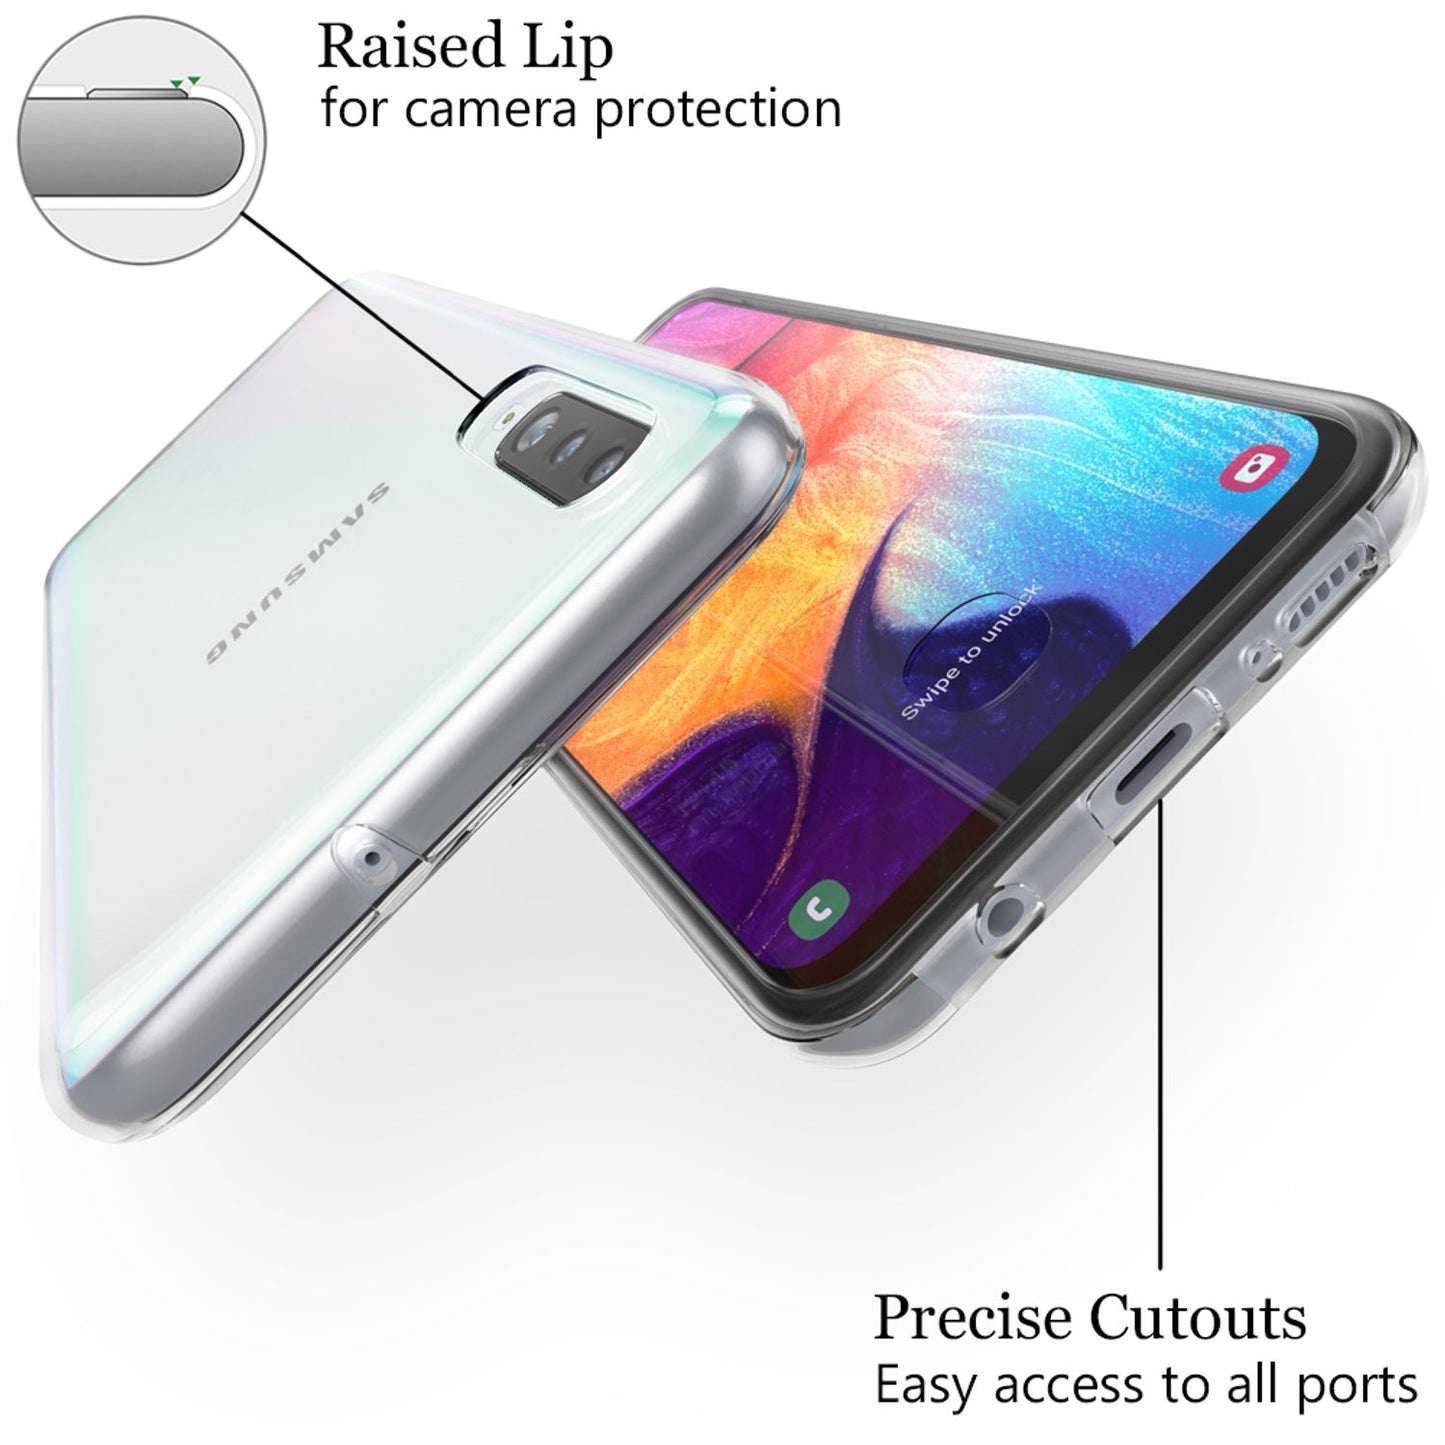 NALIA Handy Hülle für Samsung Galaxy A50, Slim Schutz Case Cover Tasche Bumper